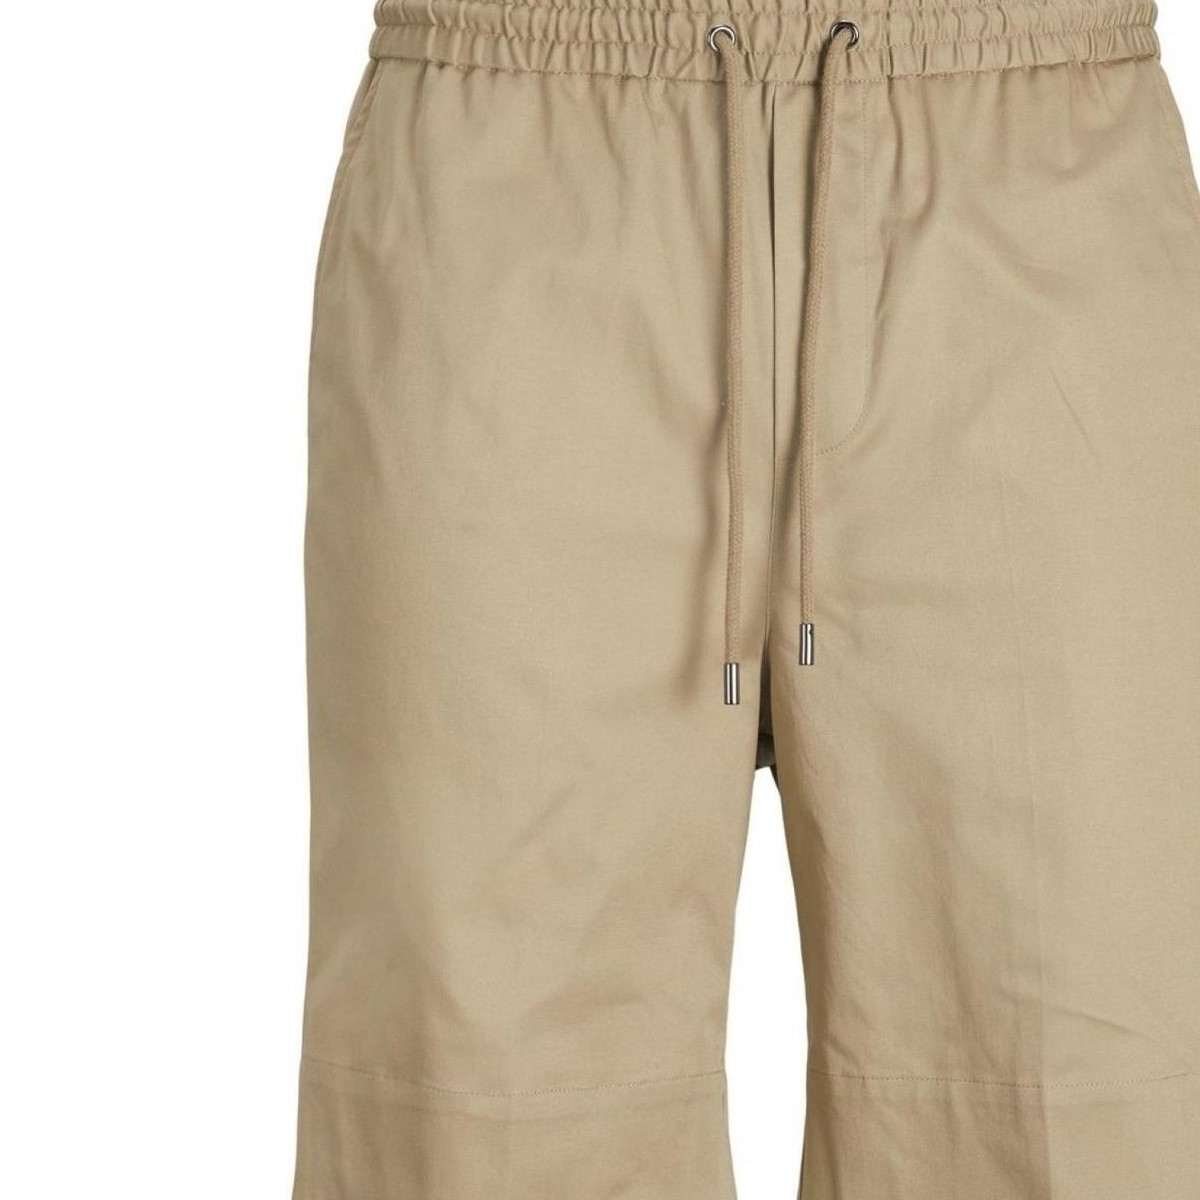 Kleidung Herren Shorts / Bermudas Jack & Jones 12205516 STAKON-LEAD GRAY Beige